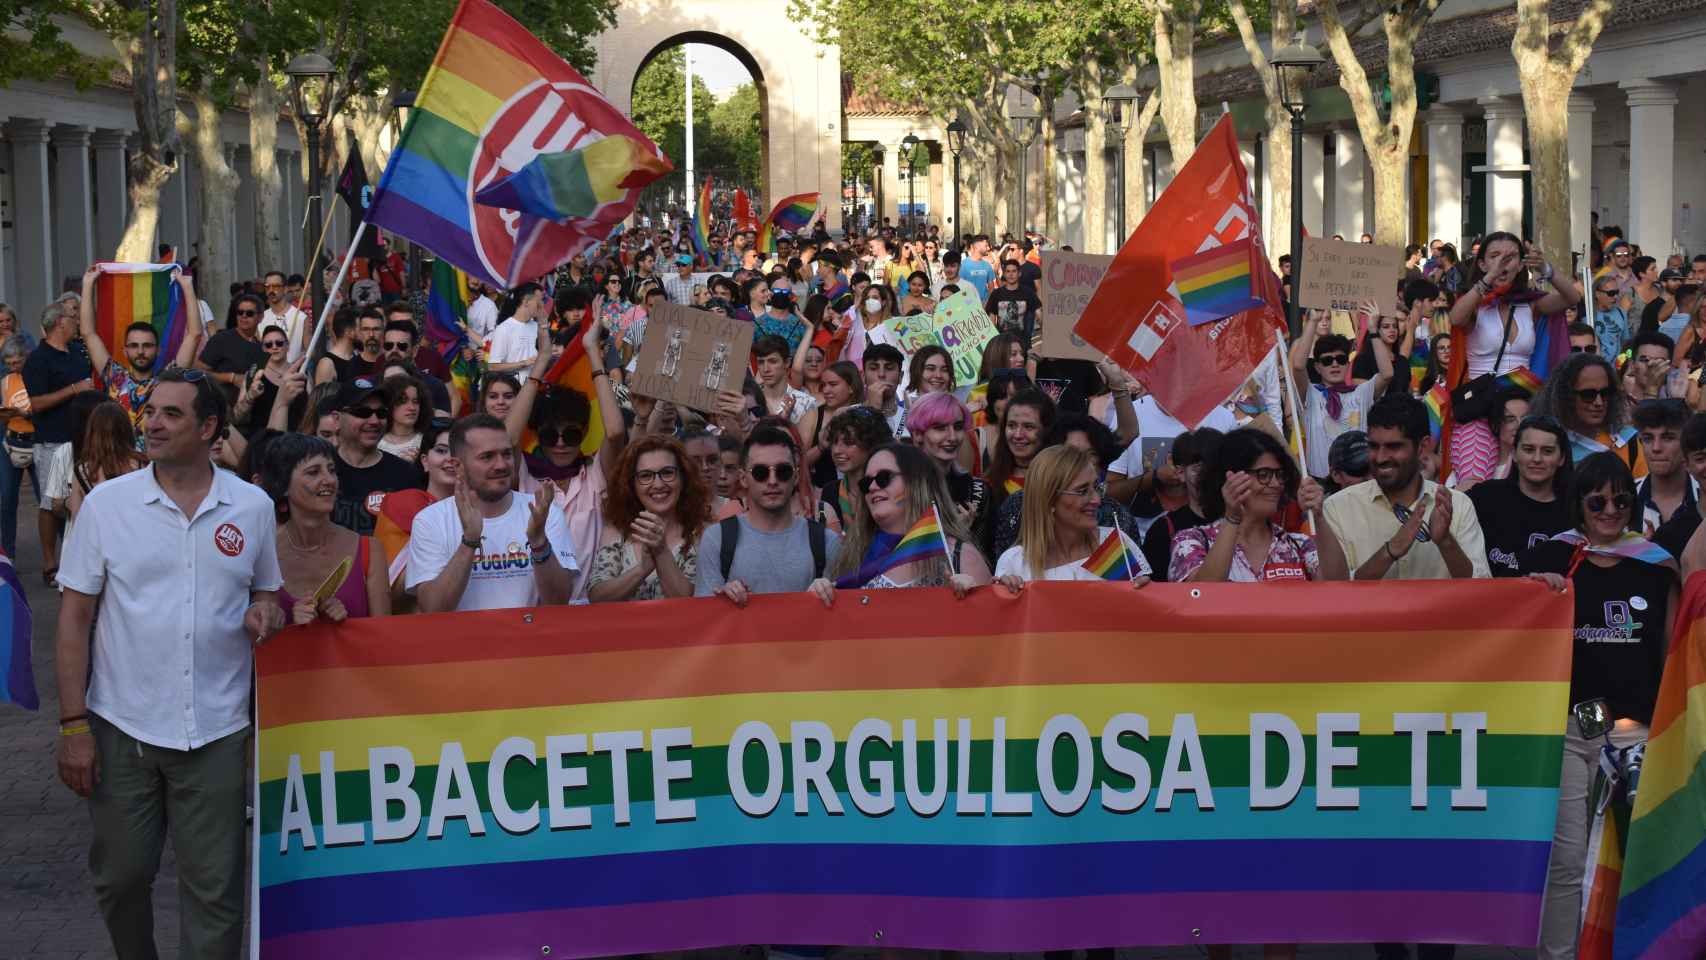 Orgullo LGTBI en Albacete, espectáculo de drones en Talavera de la Reina, Festival de Almagro...